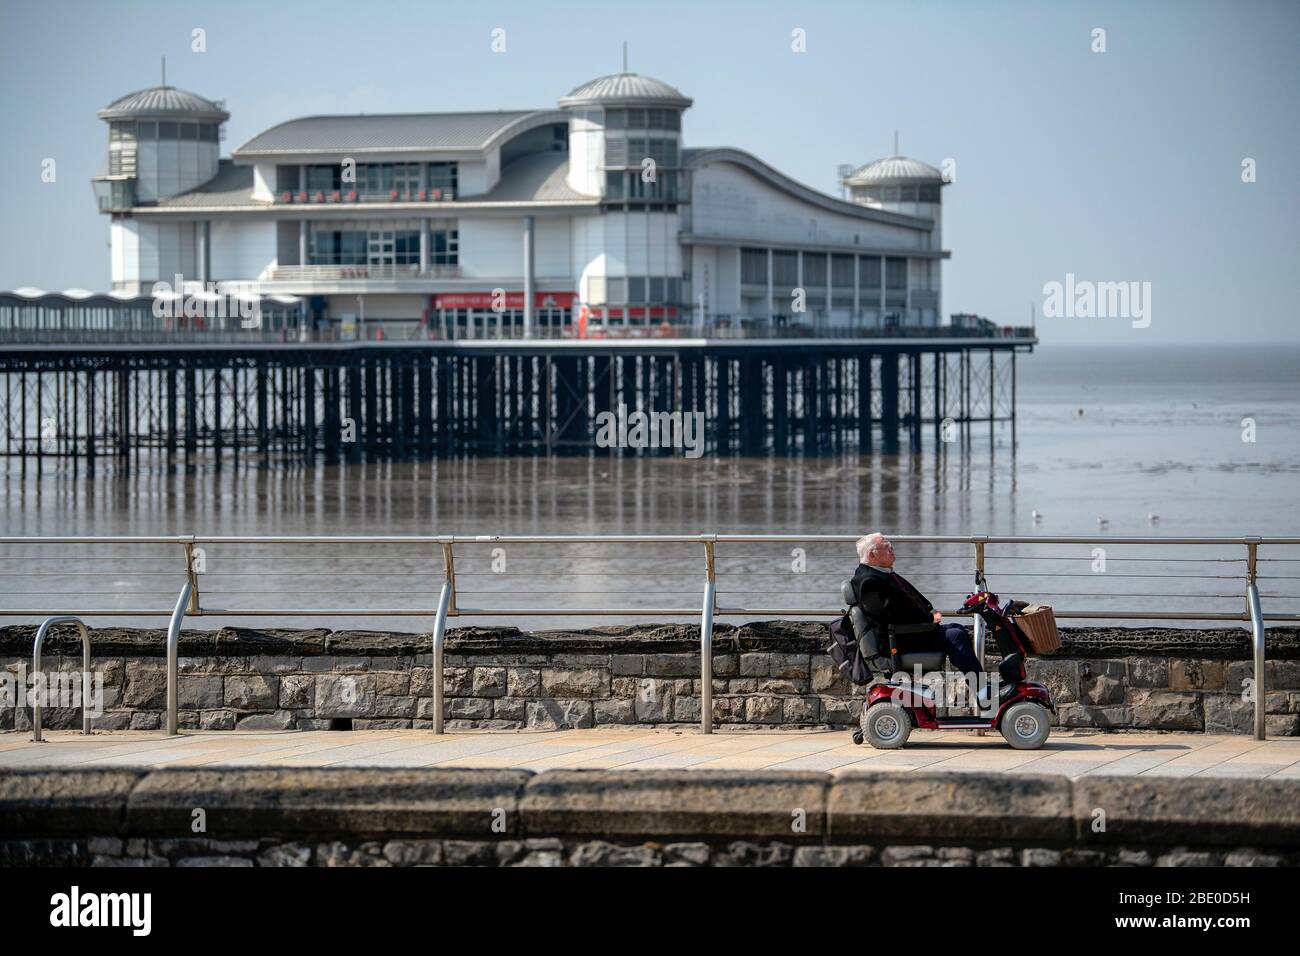 Un uomo in scooter da movimento corre lungo la Royal Parade passando davanti al Grand Pier a Weston-super-Mare durante il blocco Coronavirus nel Regno Unito. Foto Stock